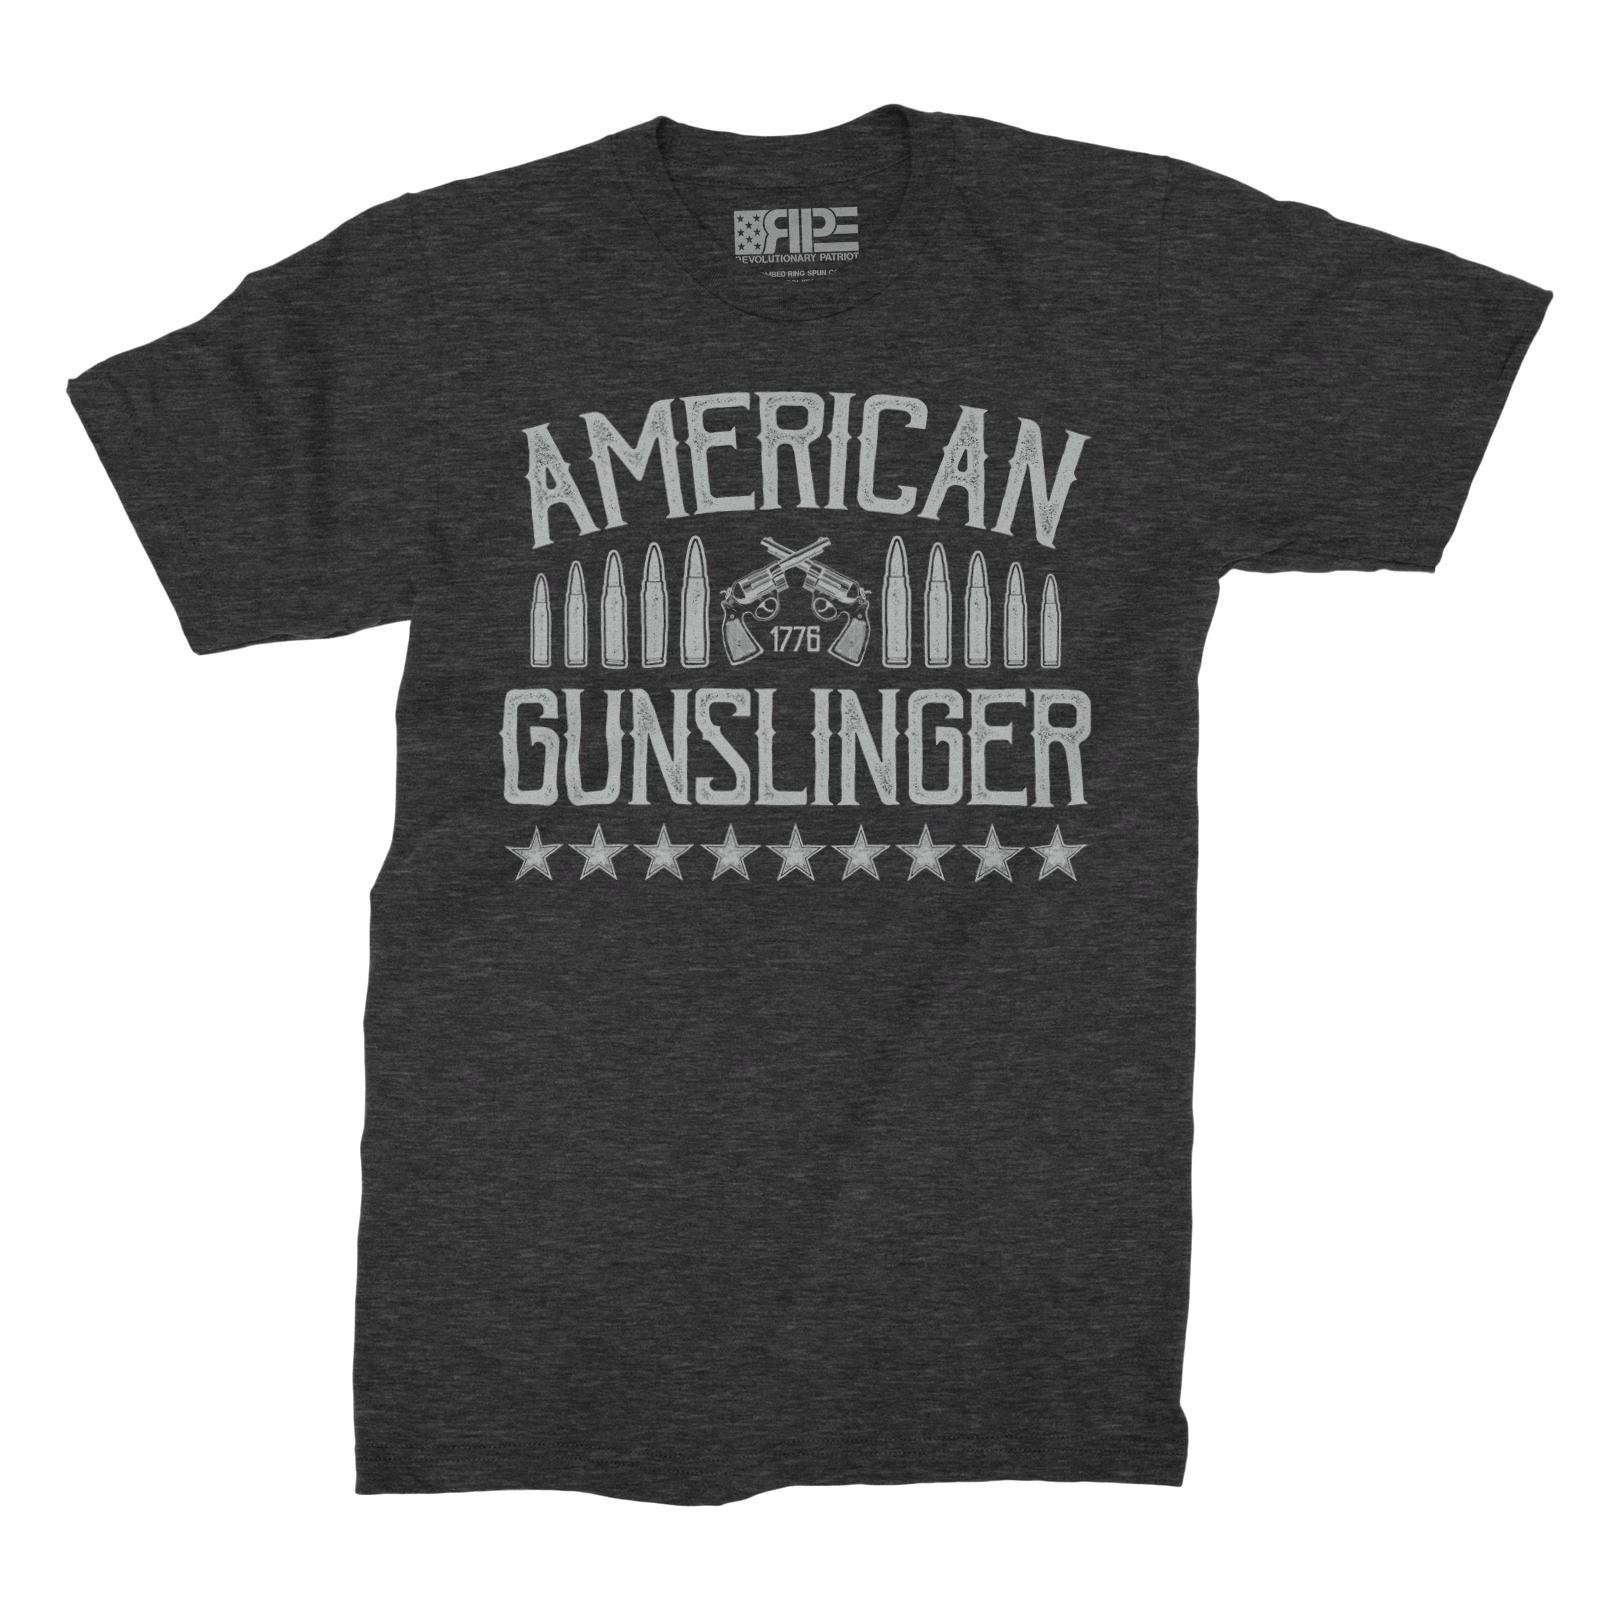 American Gunslinger (Dark Grey Heather) - Revolutionary Patriot